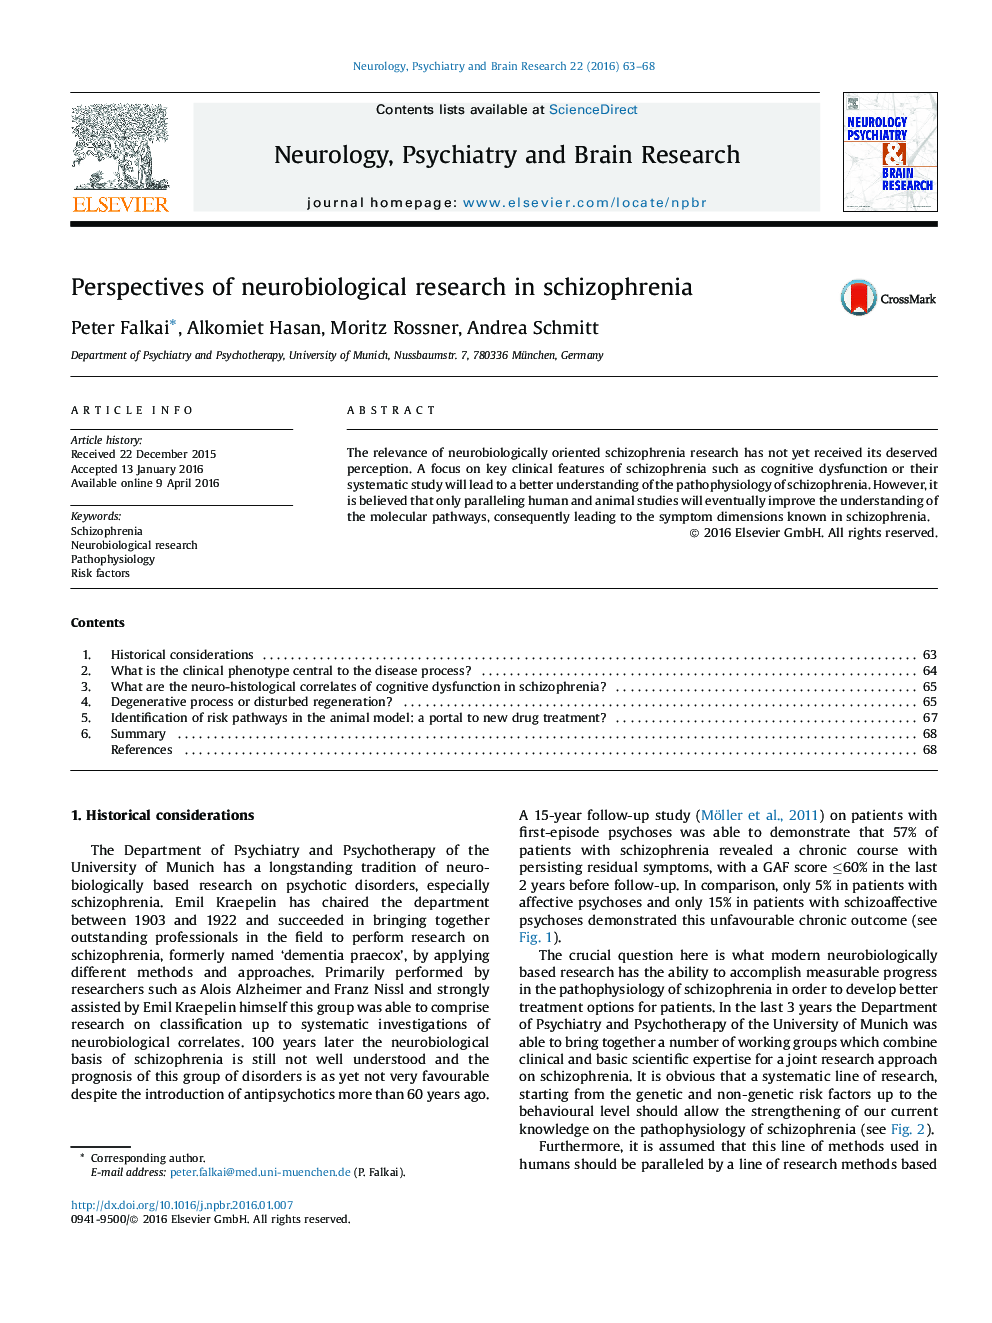 چشم انداز تحقیقات نوروبیولوژی در اسکیزوفرنیا 